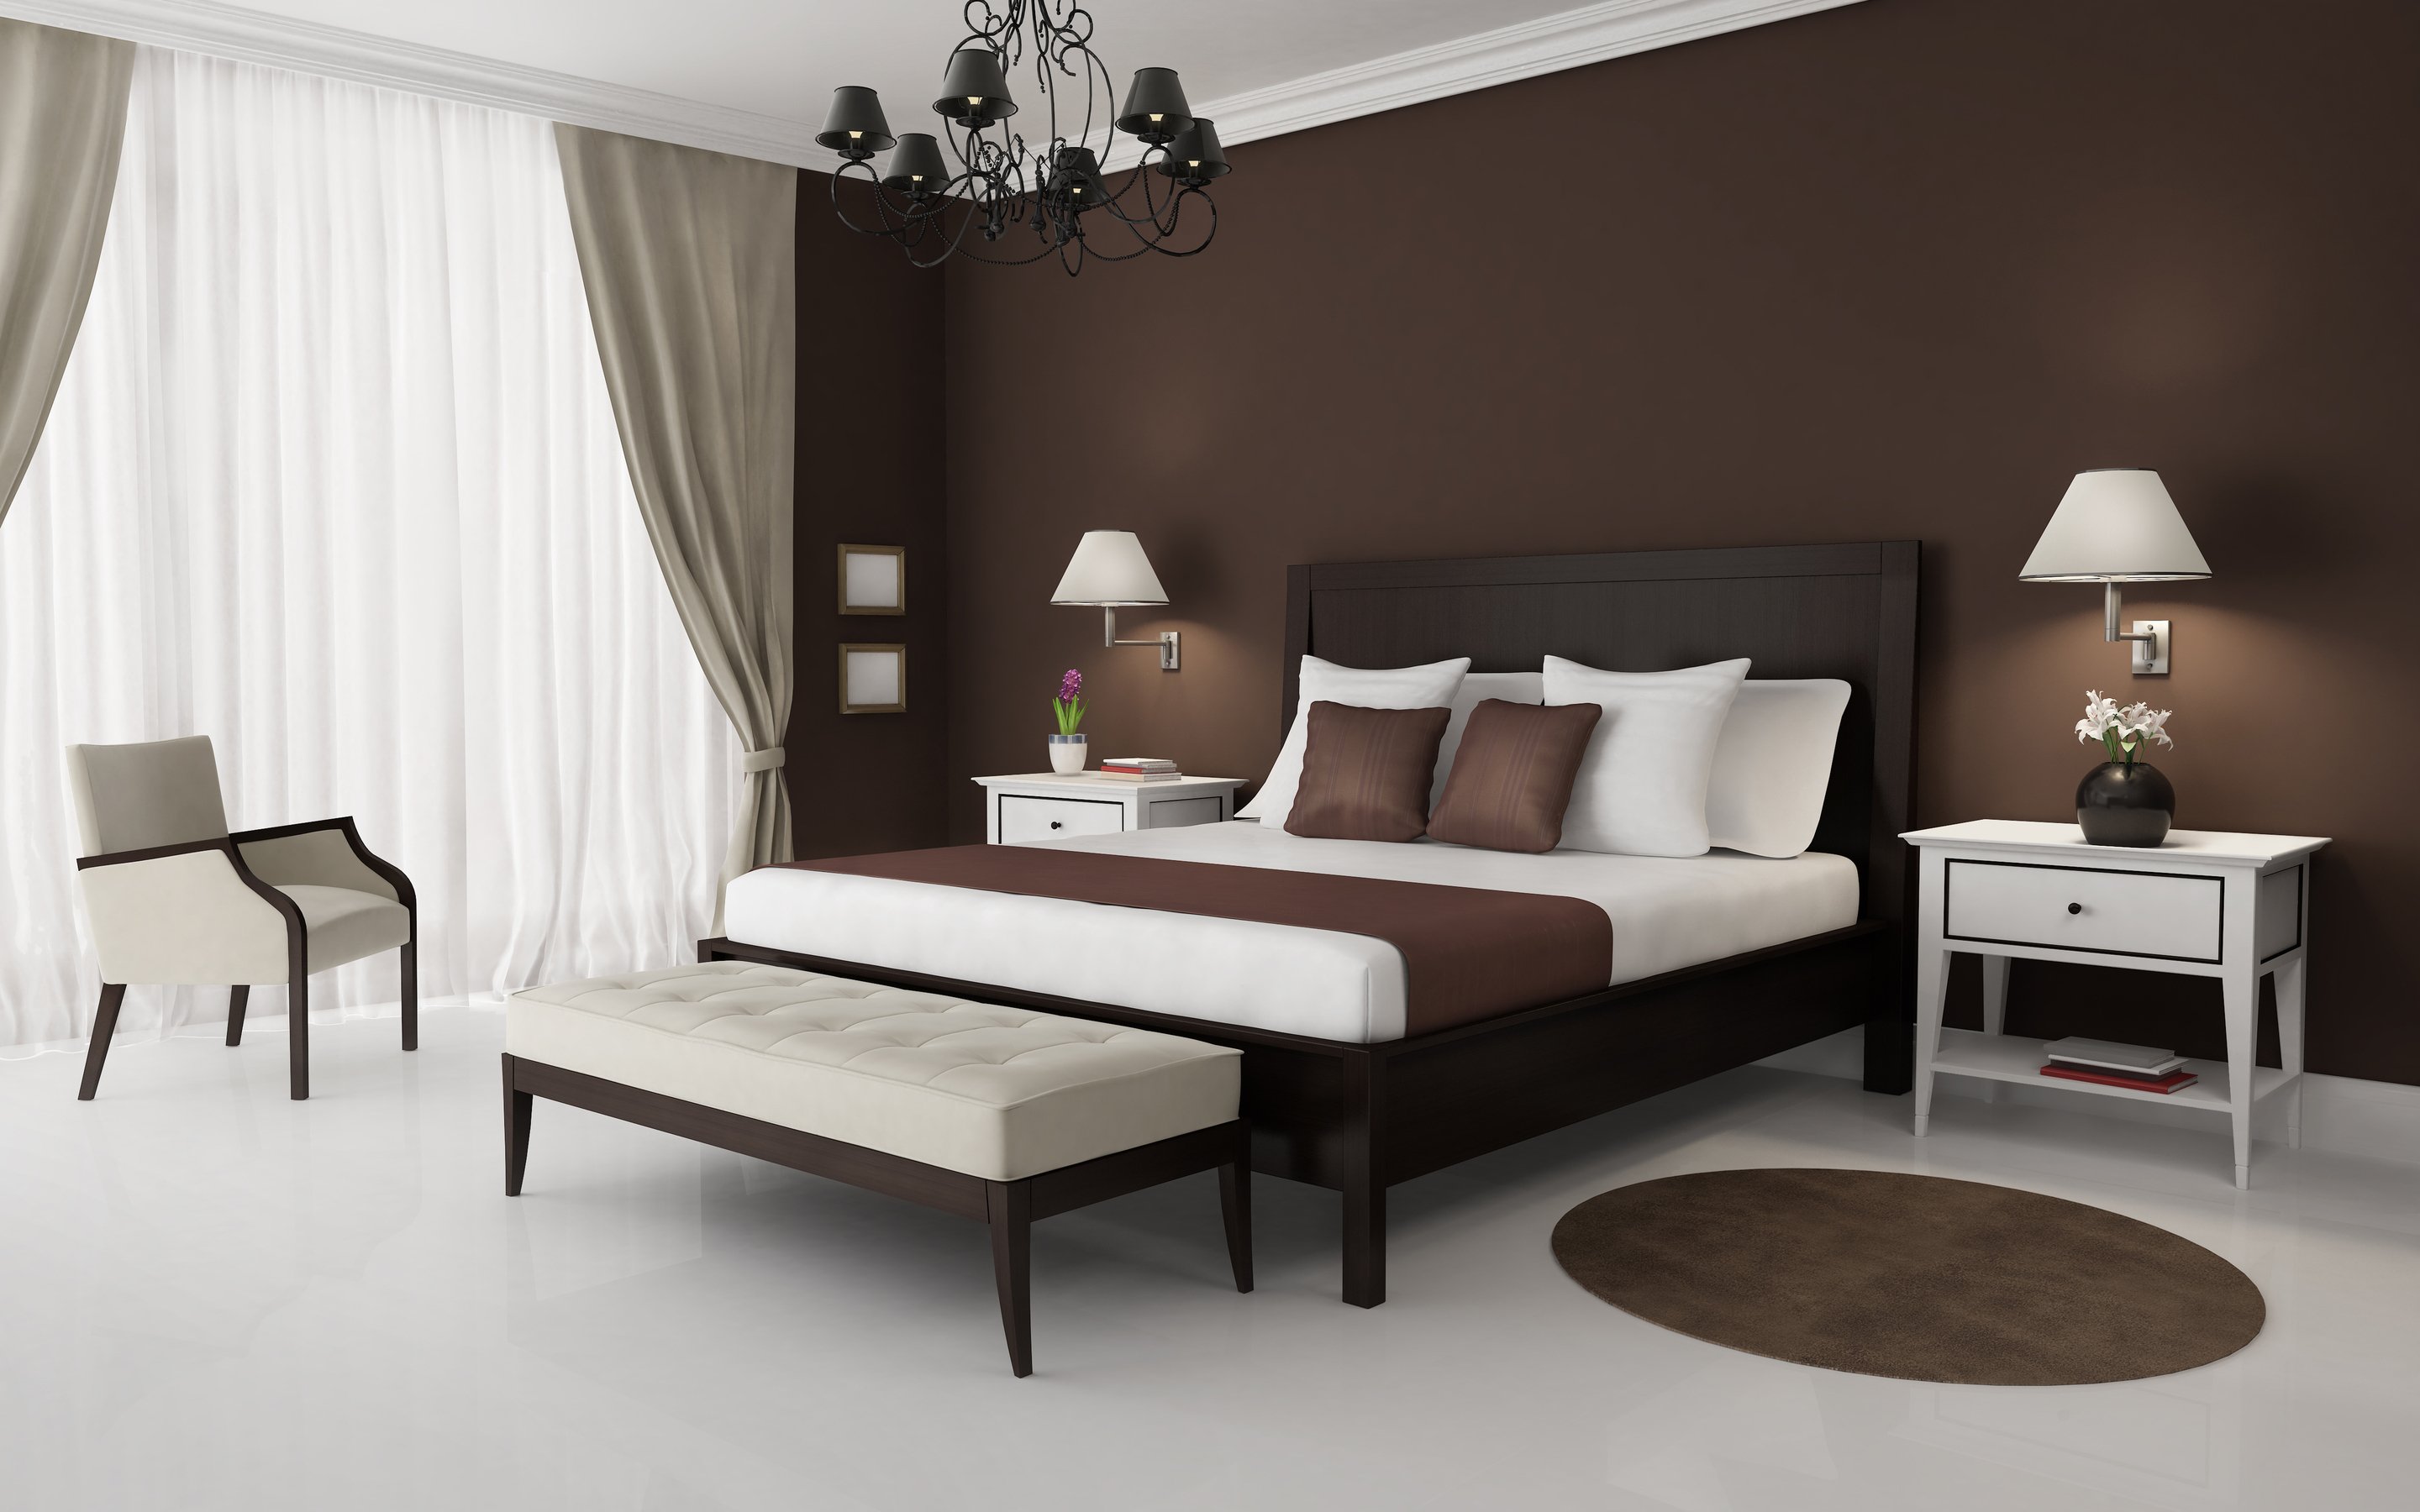 Спальни в коричневых тонах фото » Современный дизайн на Vip-1gl